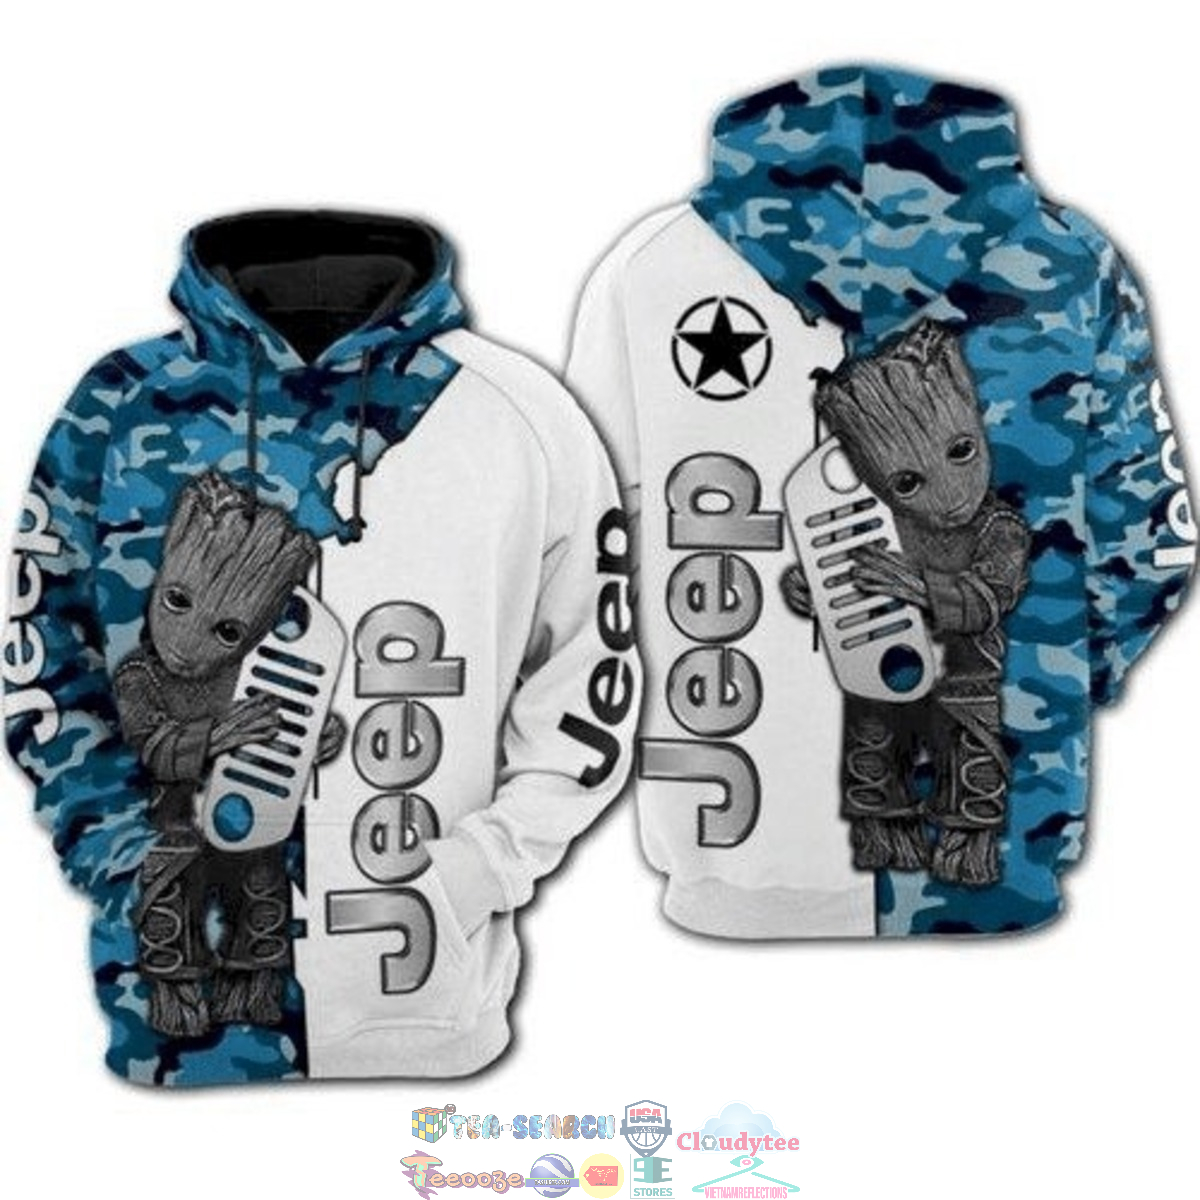 xw5uoeq9-TH050822-26xxxGroot-Hug-Jeep-Camo-3D-hoodie-and-t-shirt3.jpg